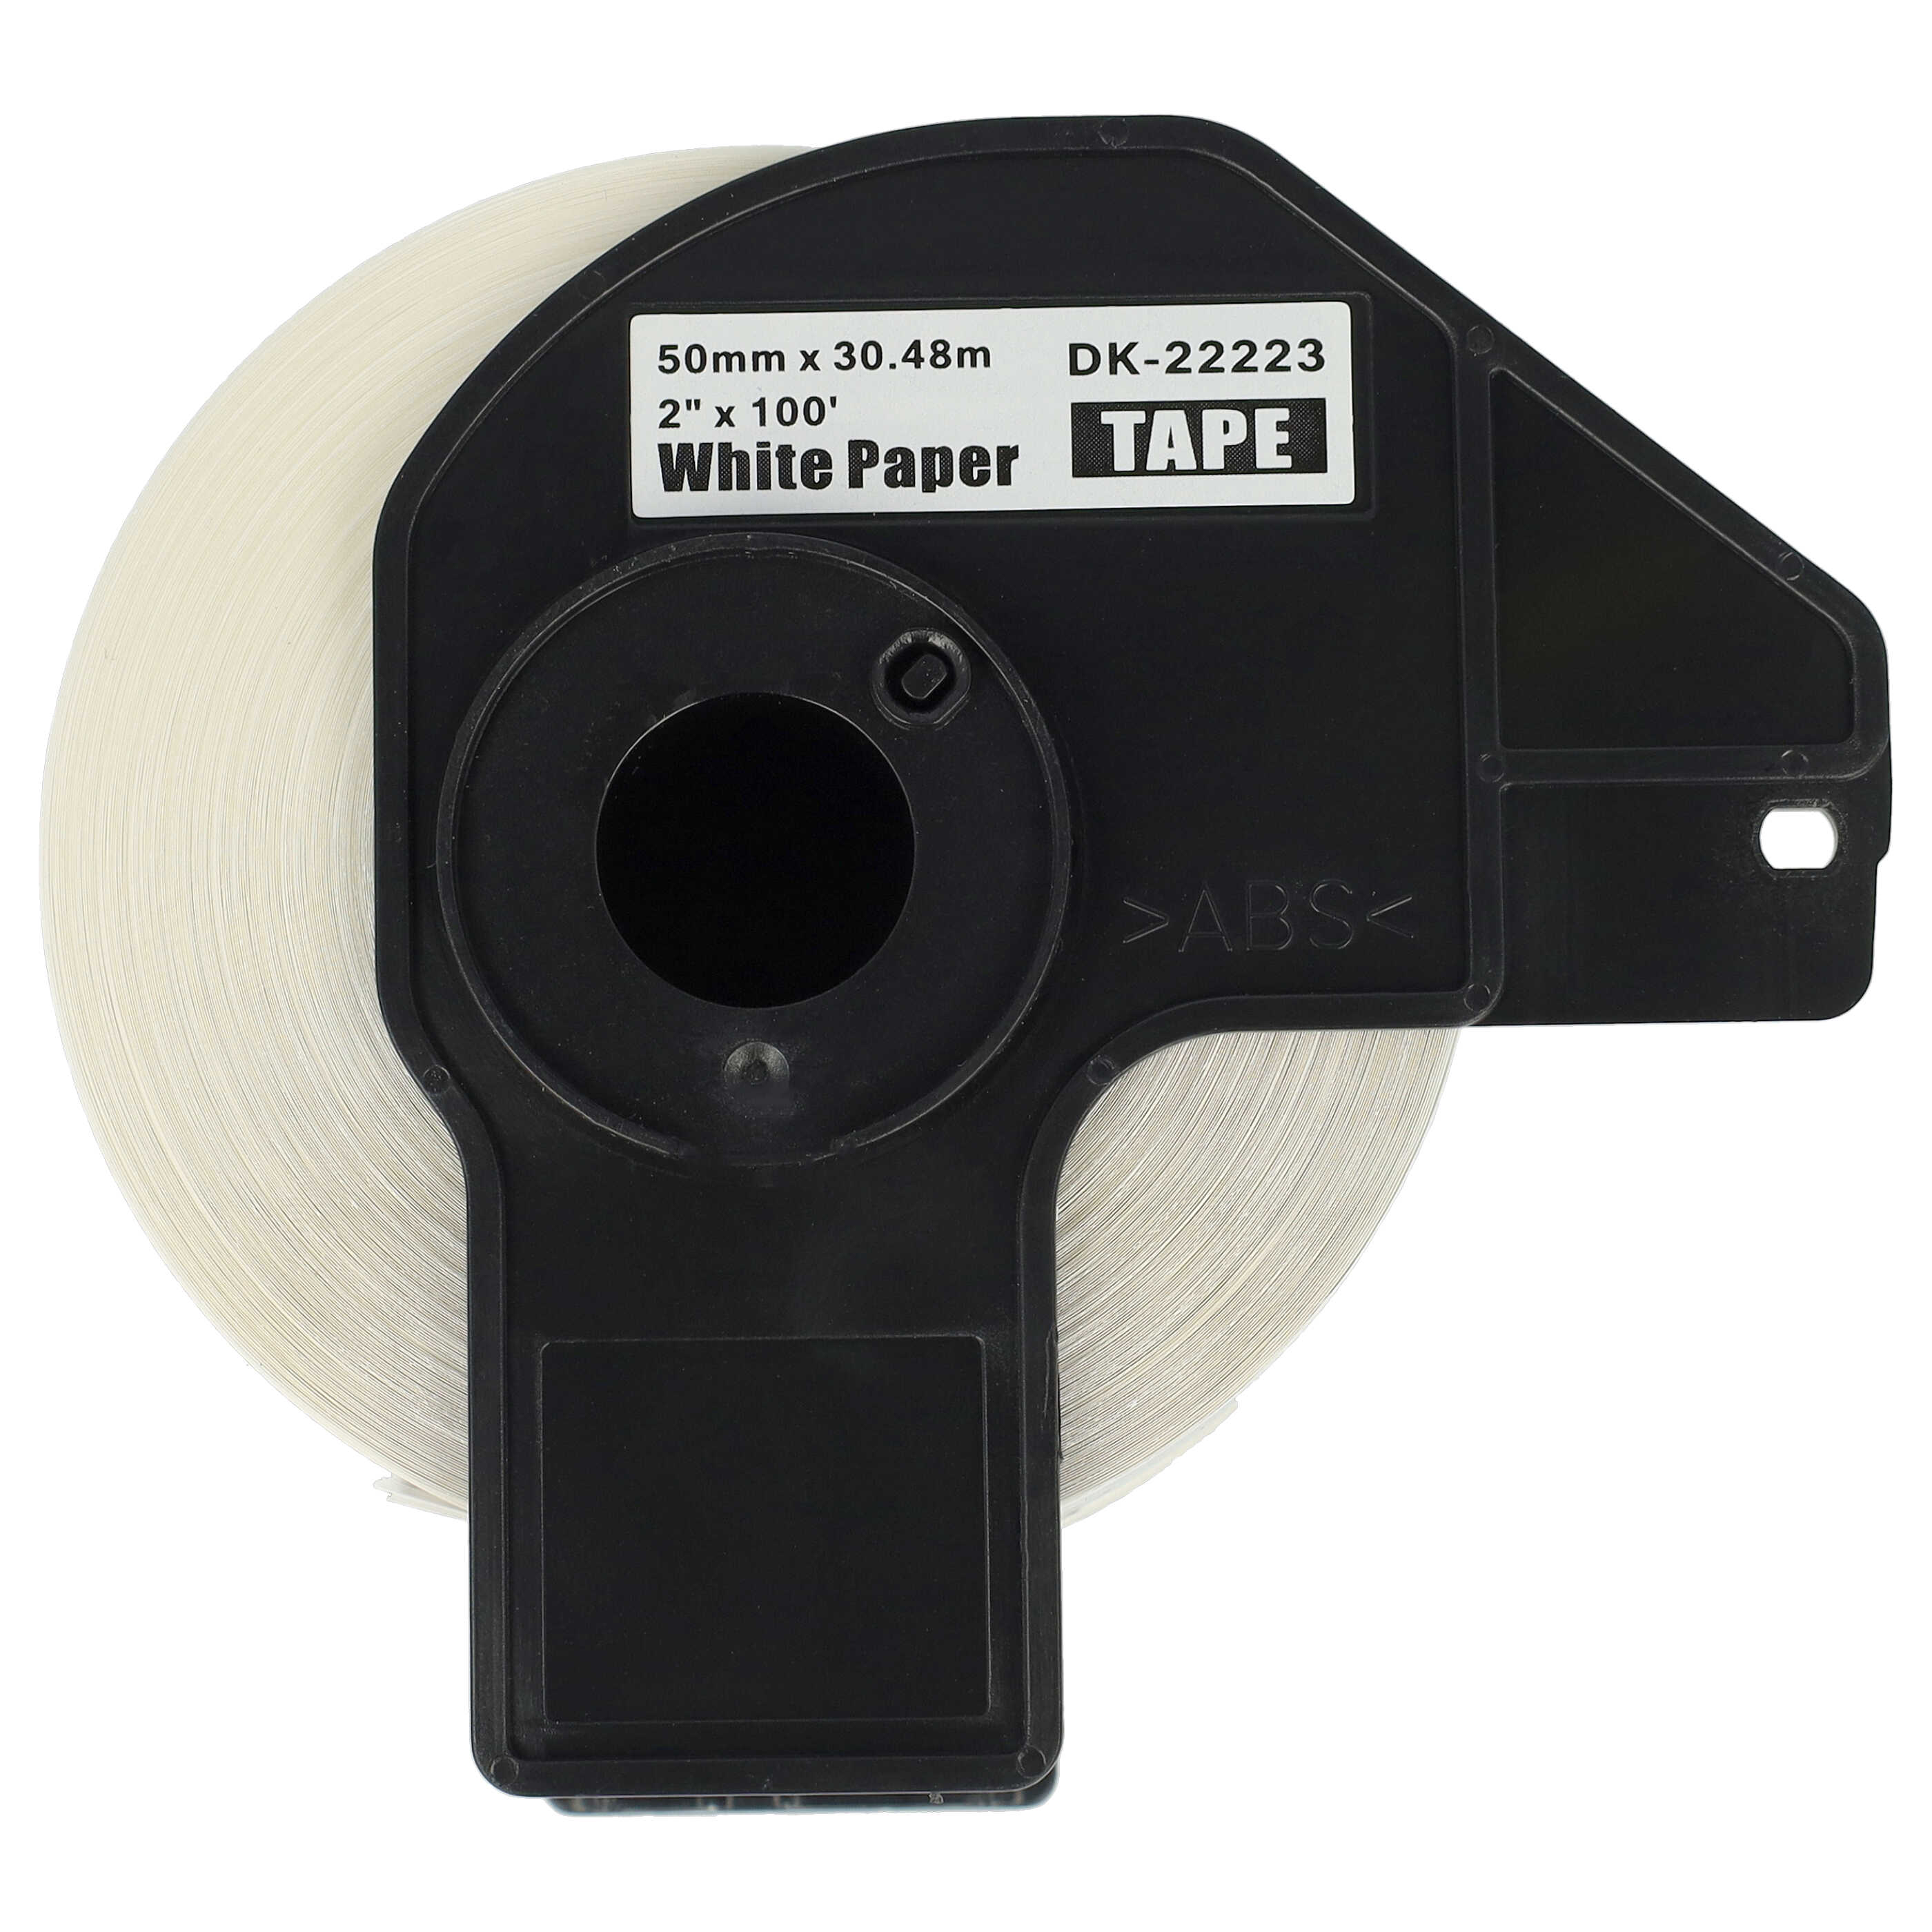 5x Etiketten als Ersatz für Brother DK-22223 Etikettendrucker - Premium 50mm x 30,48m + Halter